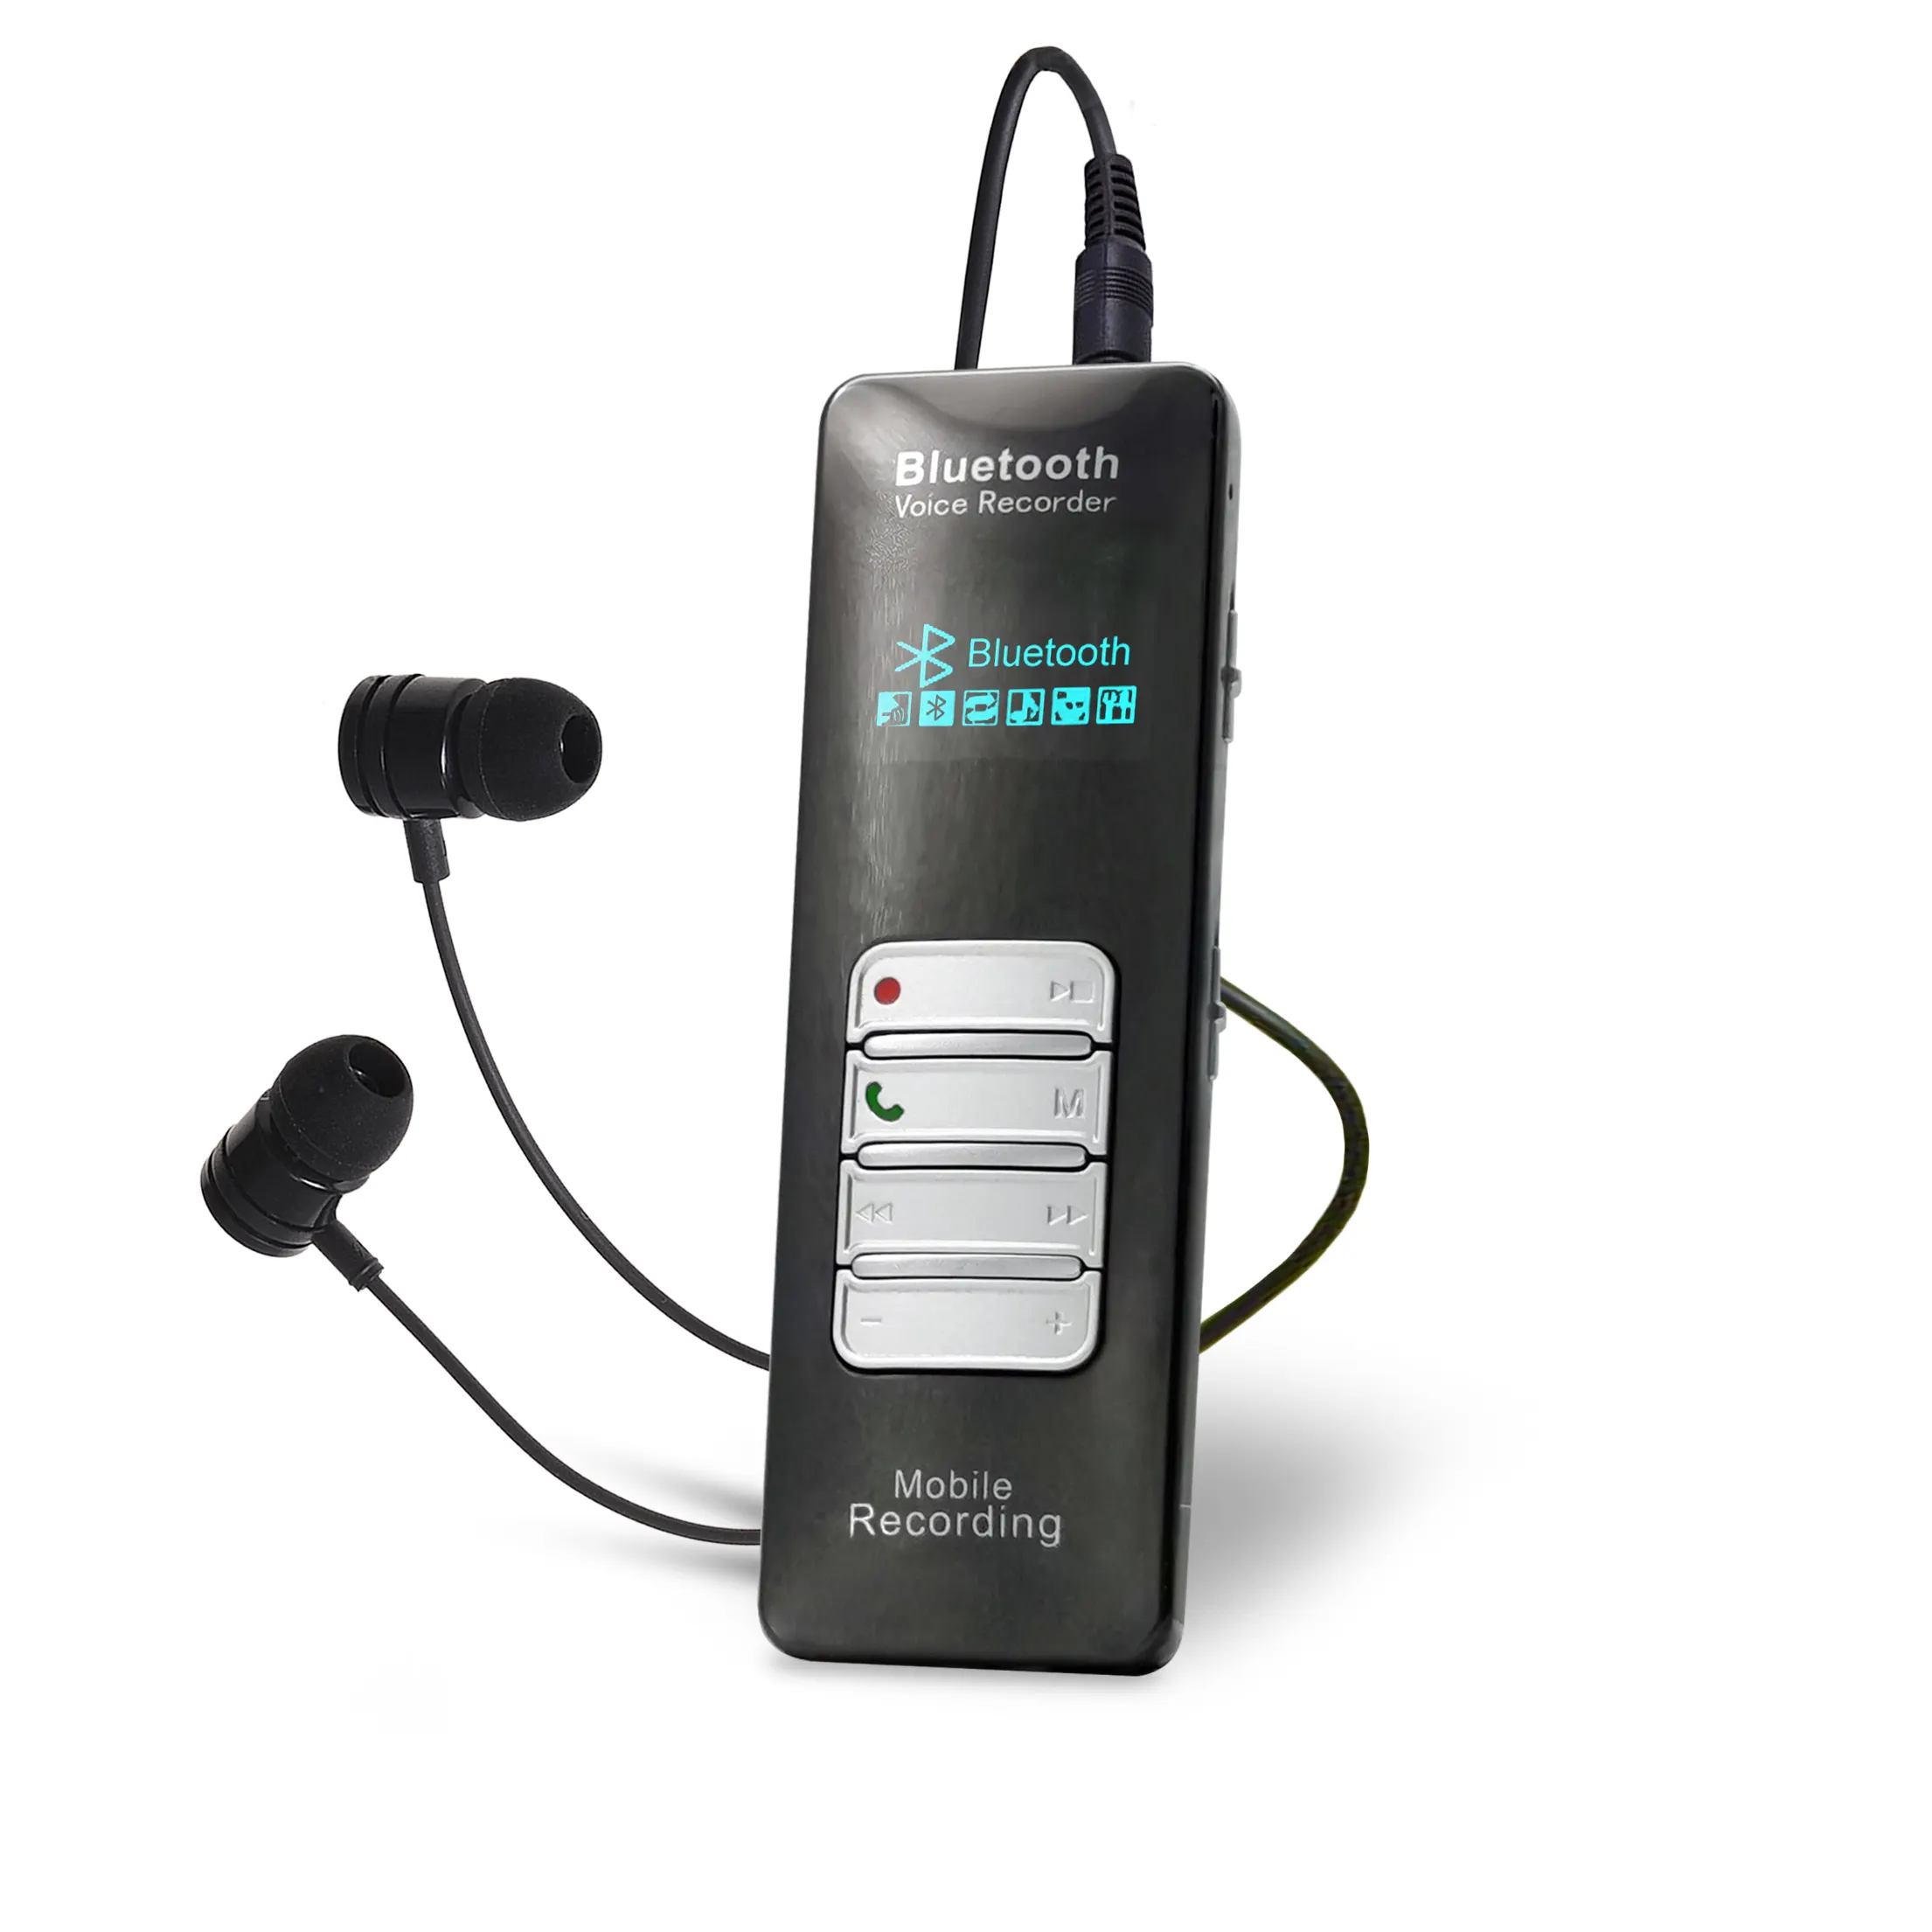 8ラインポートチャンネル音声録音デバイス通話録音デバイスシステム電話録音デバイスボックスブラックメタルパワーサイズ